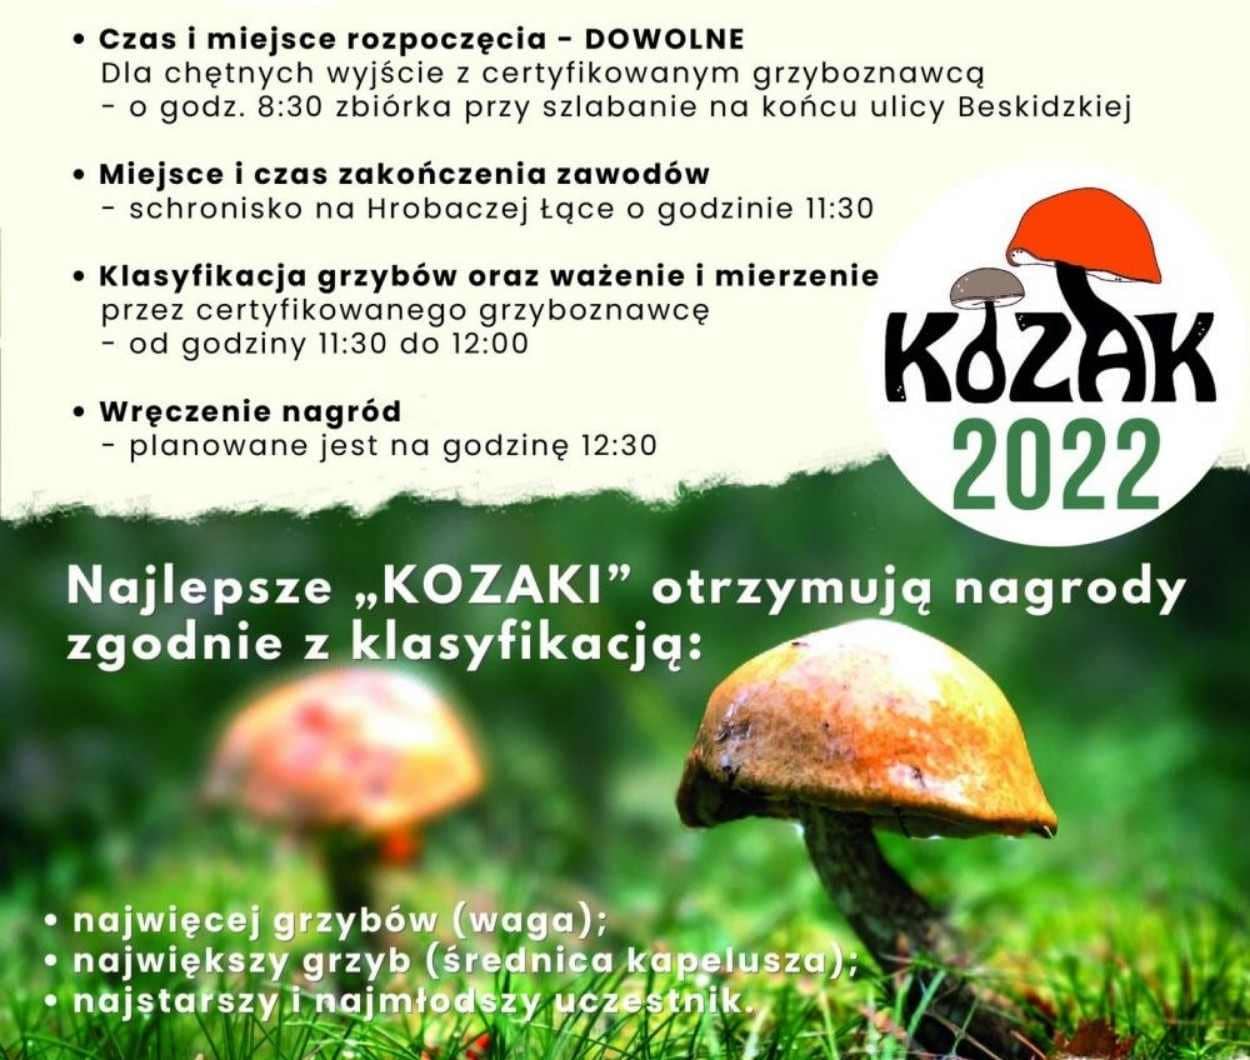 Kozak 2022, czyli Rodzinne Grzybobranie w Kozach